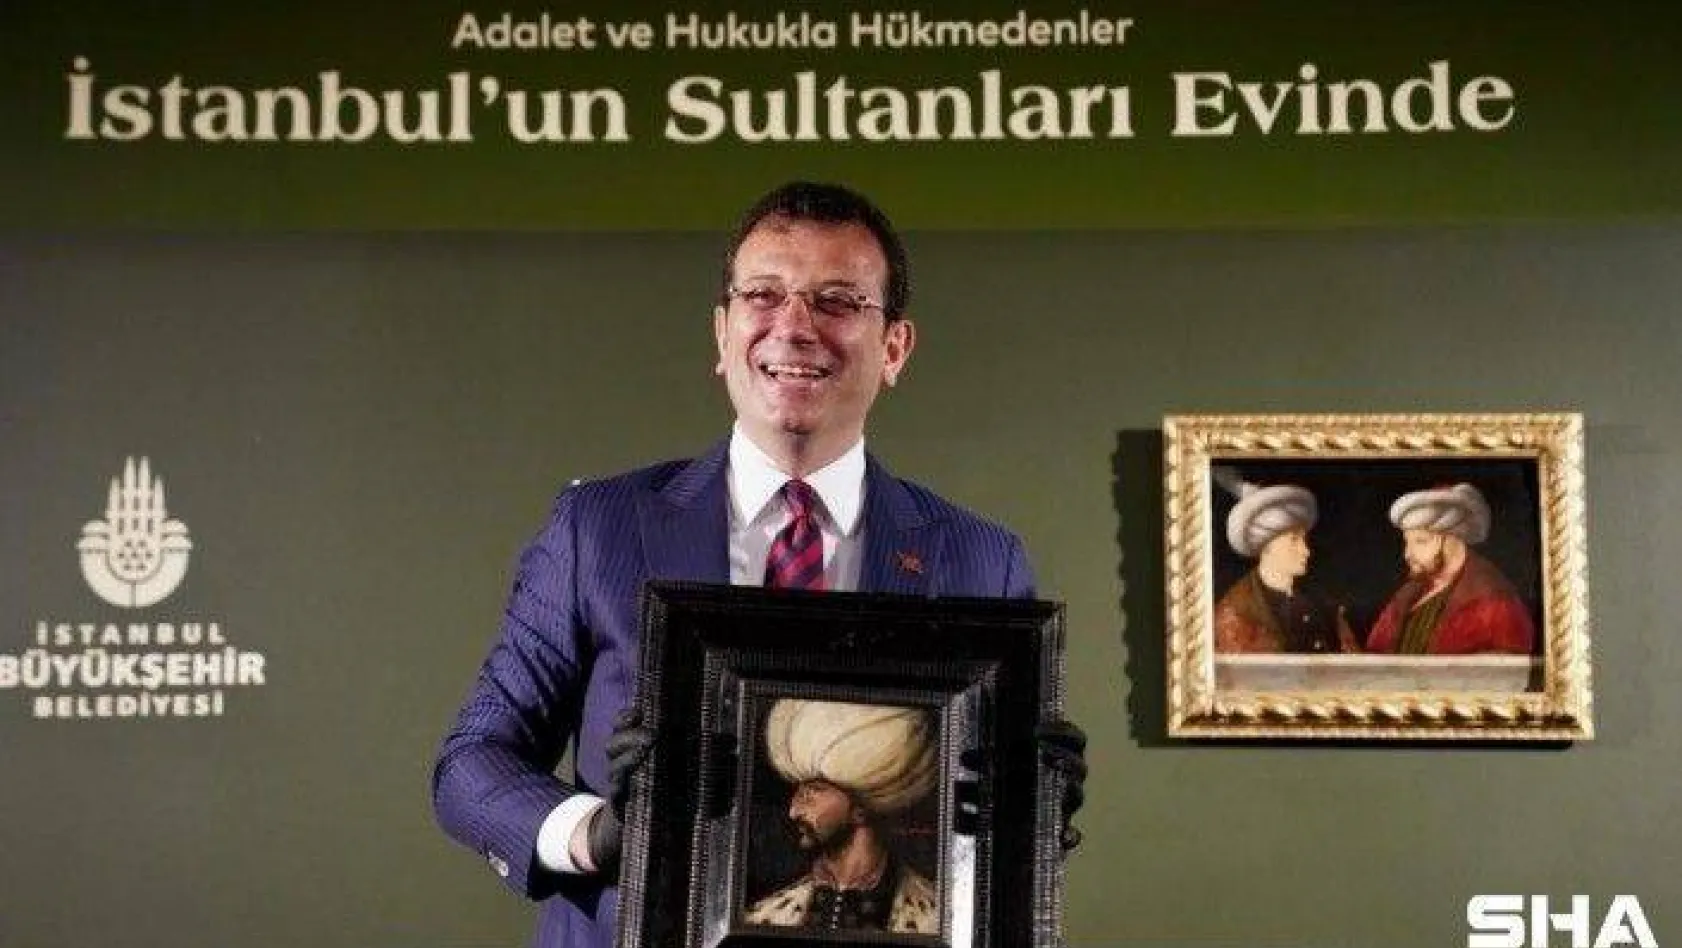 Kanuni Sultan Süleyman tablosu, Fatih Sultan Mehmet'in portresinin yanında yerini aldı